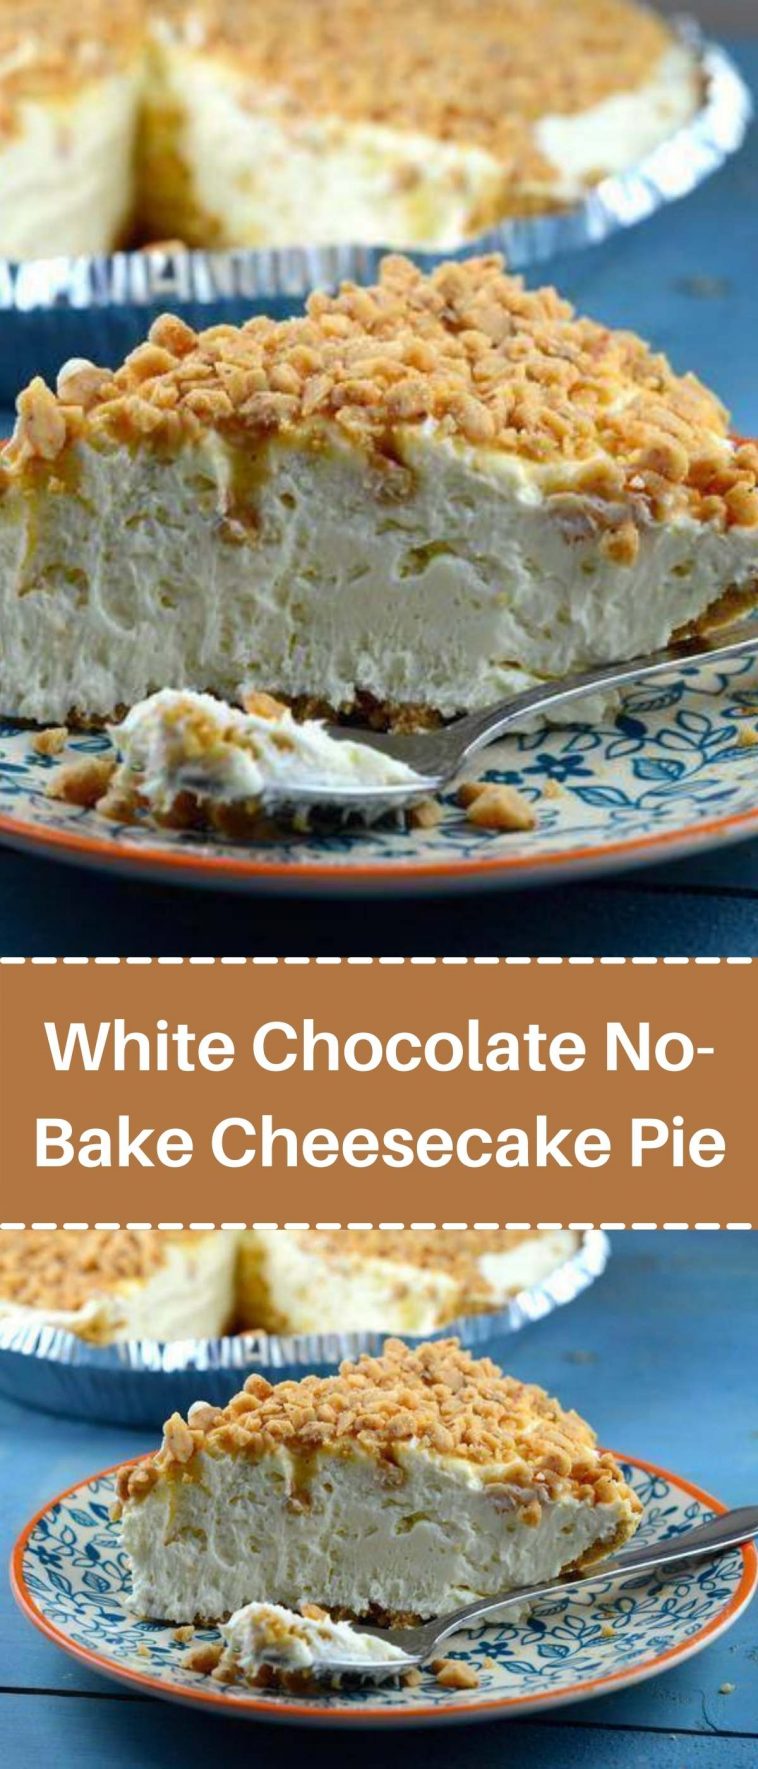 White Chocolate No-Bake Cheesecake Pie